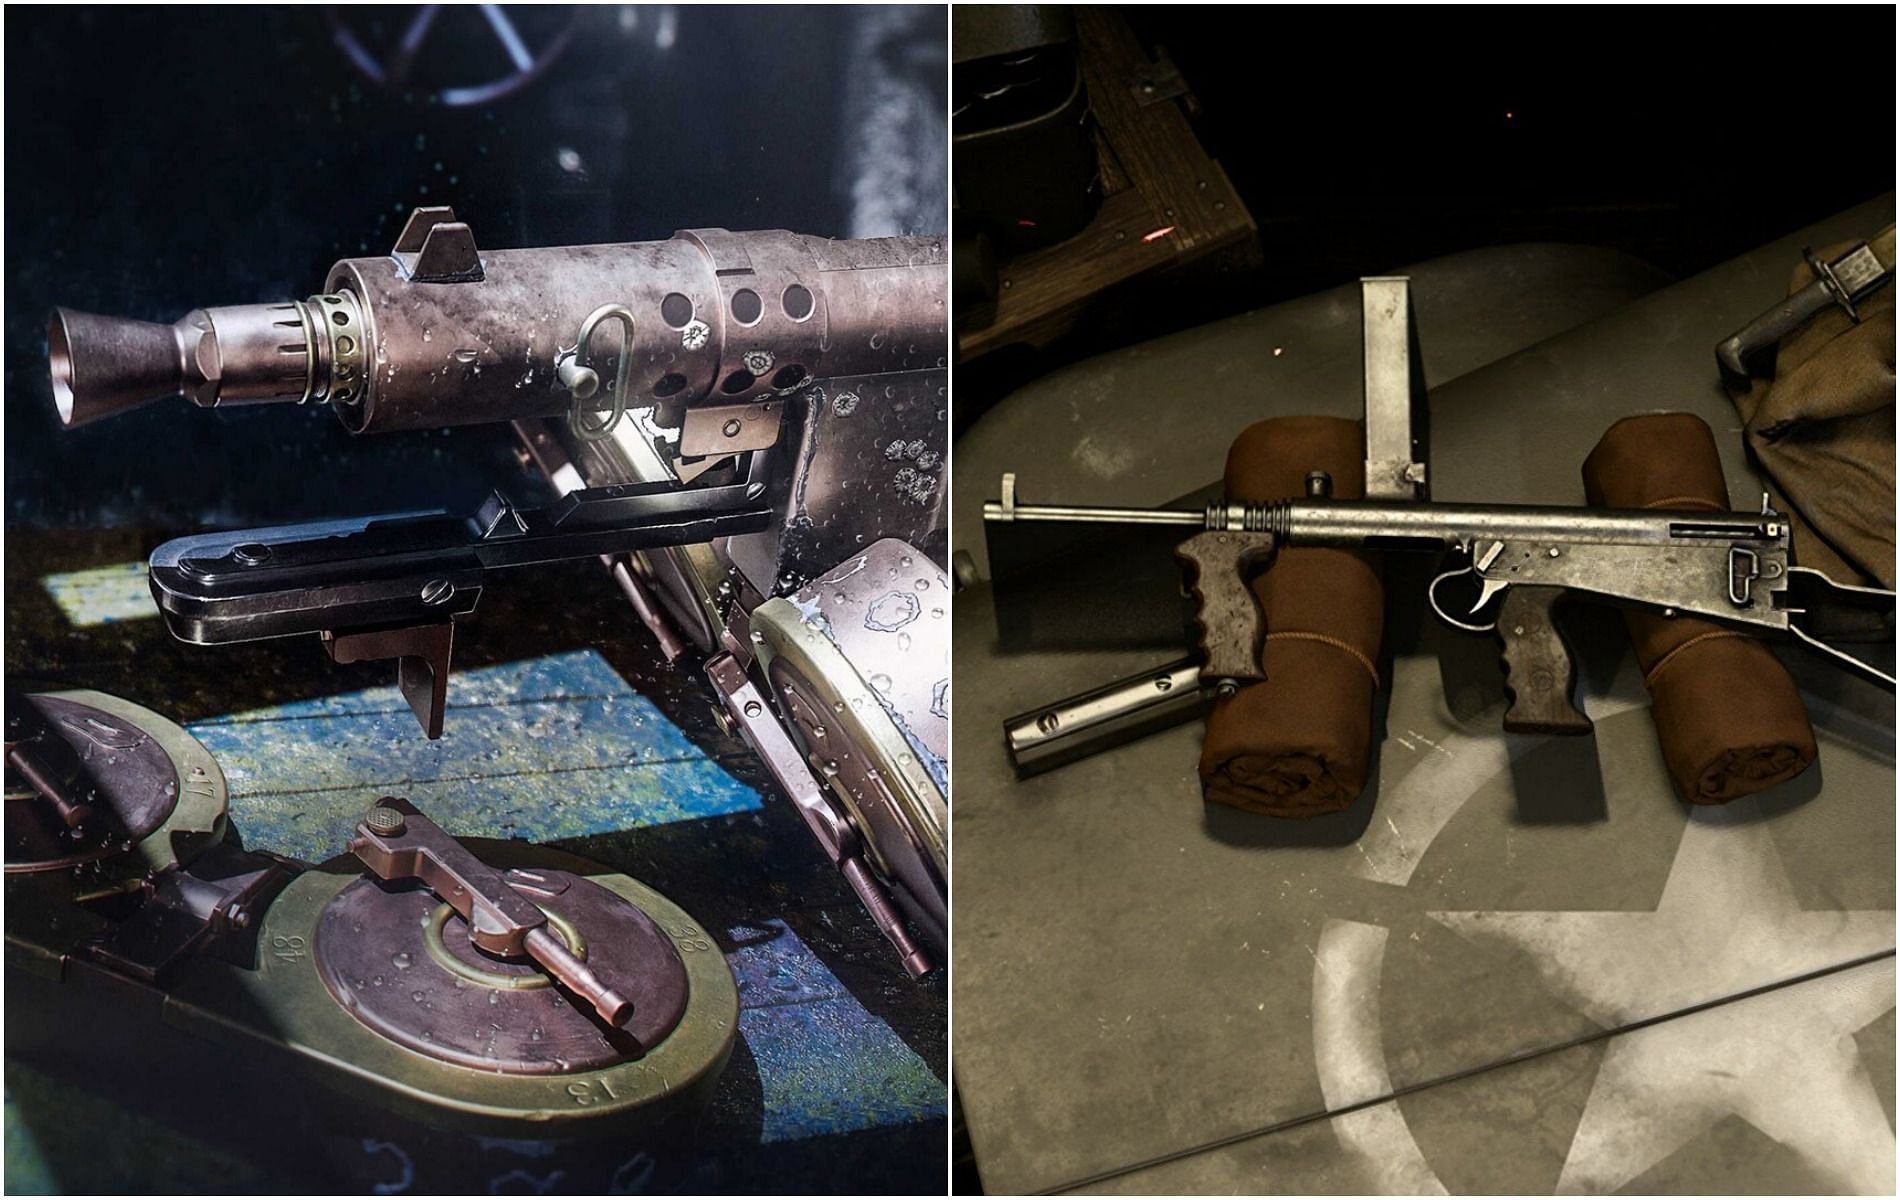 The Welgun and the Owen gun in Warzone season 3 (image via Activision)